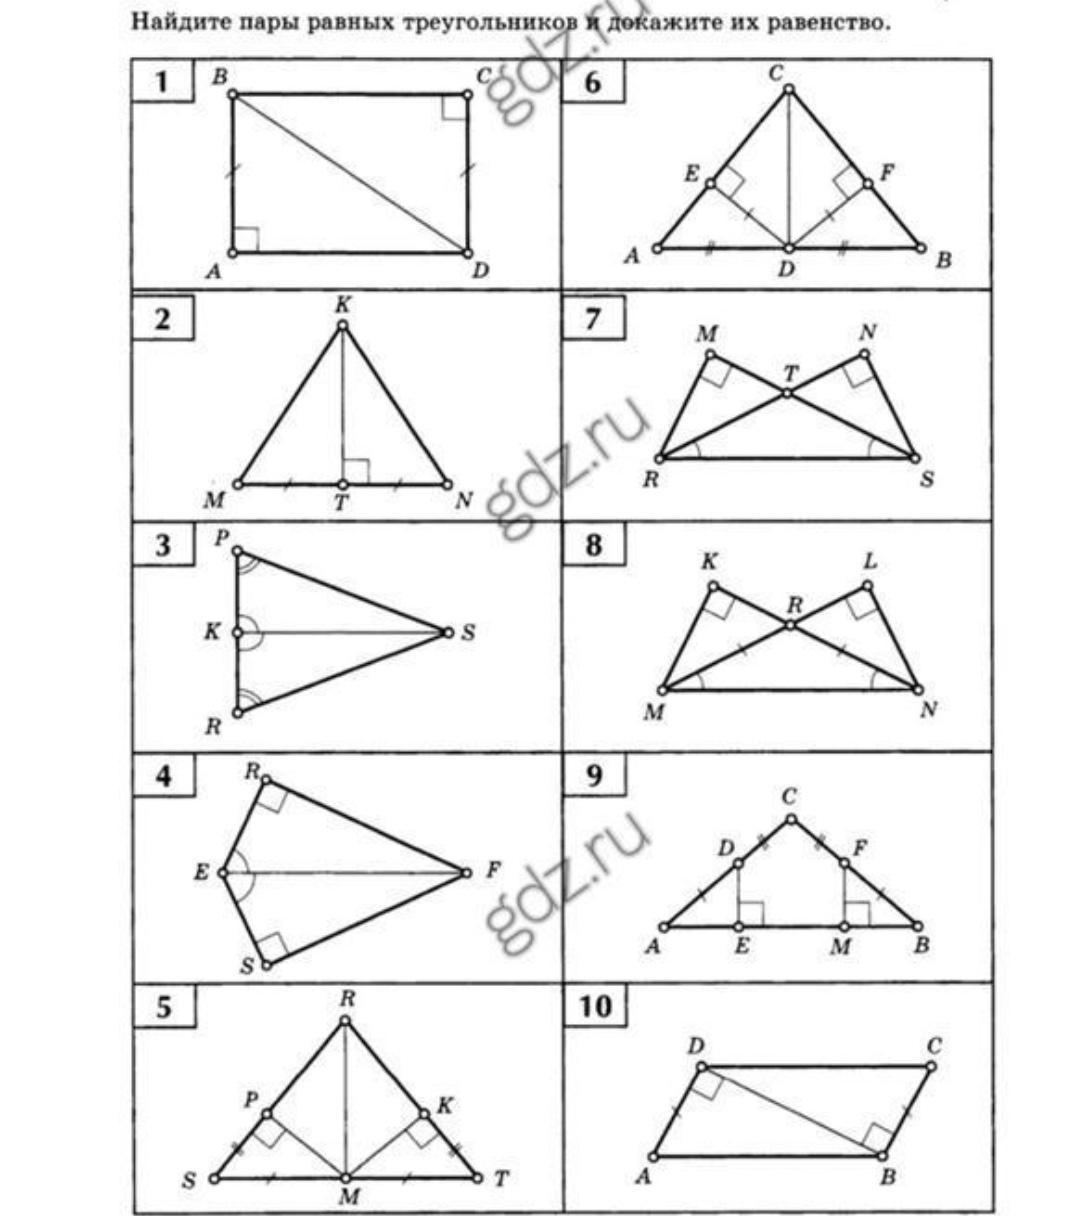 Решение прямоугольных треугольников по готовым чертежам. Задачи на признаки равенства прямоугольных треугольников 7 класс. Задания по признакам равенства прямоугольных треугольников 7 класс. Равенство прямоугольных треугольников задачи по готовым чертежам. Задания на признаки равенства прямоугольных треугольников 7 класс.